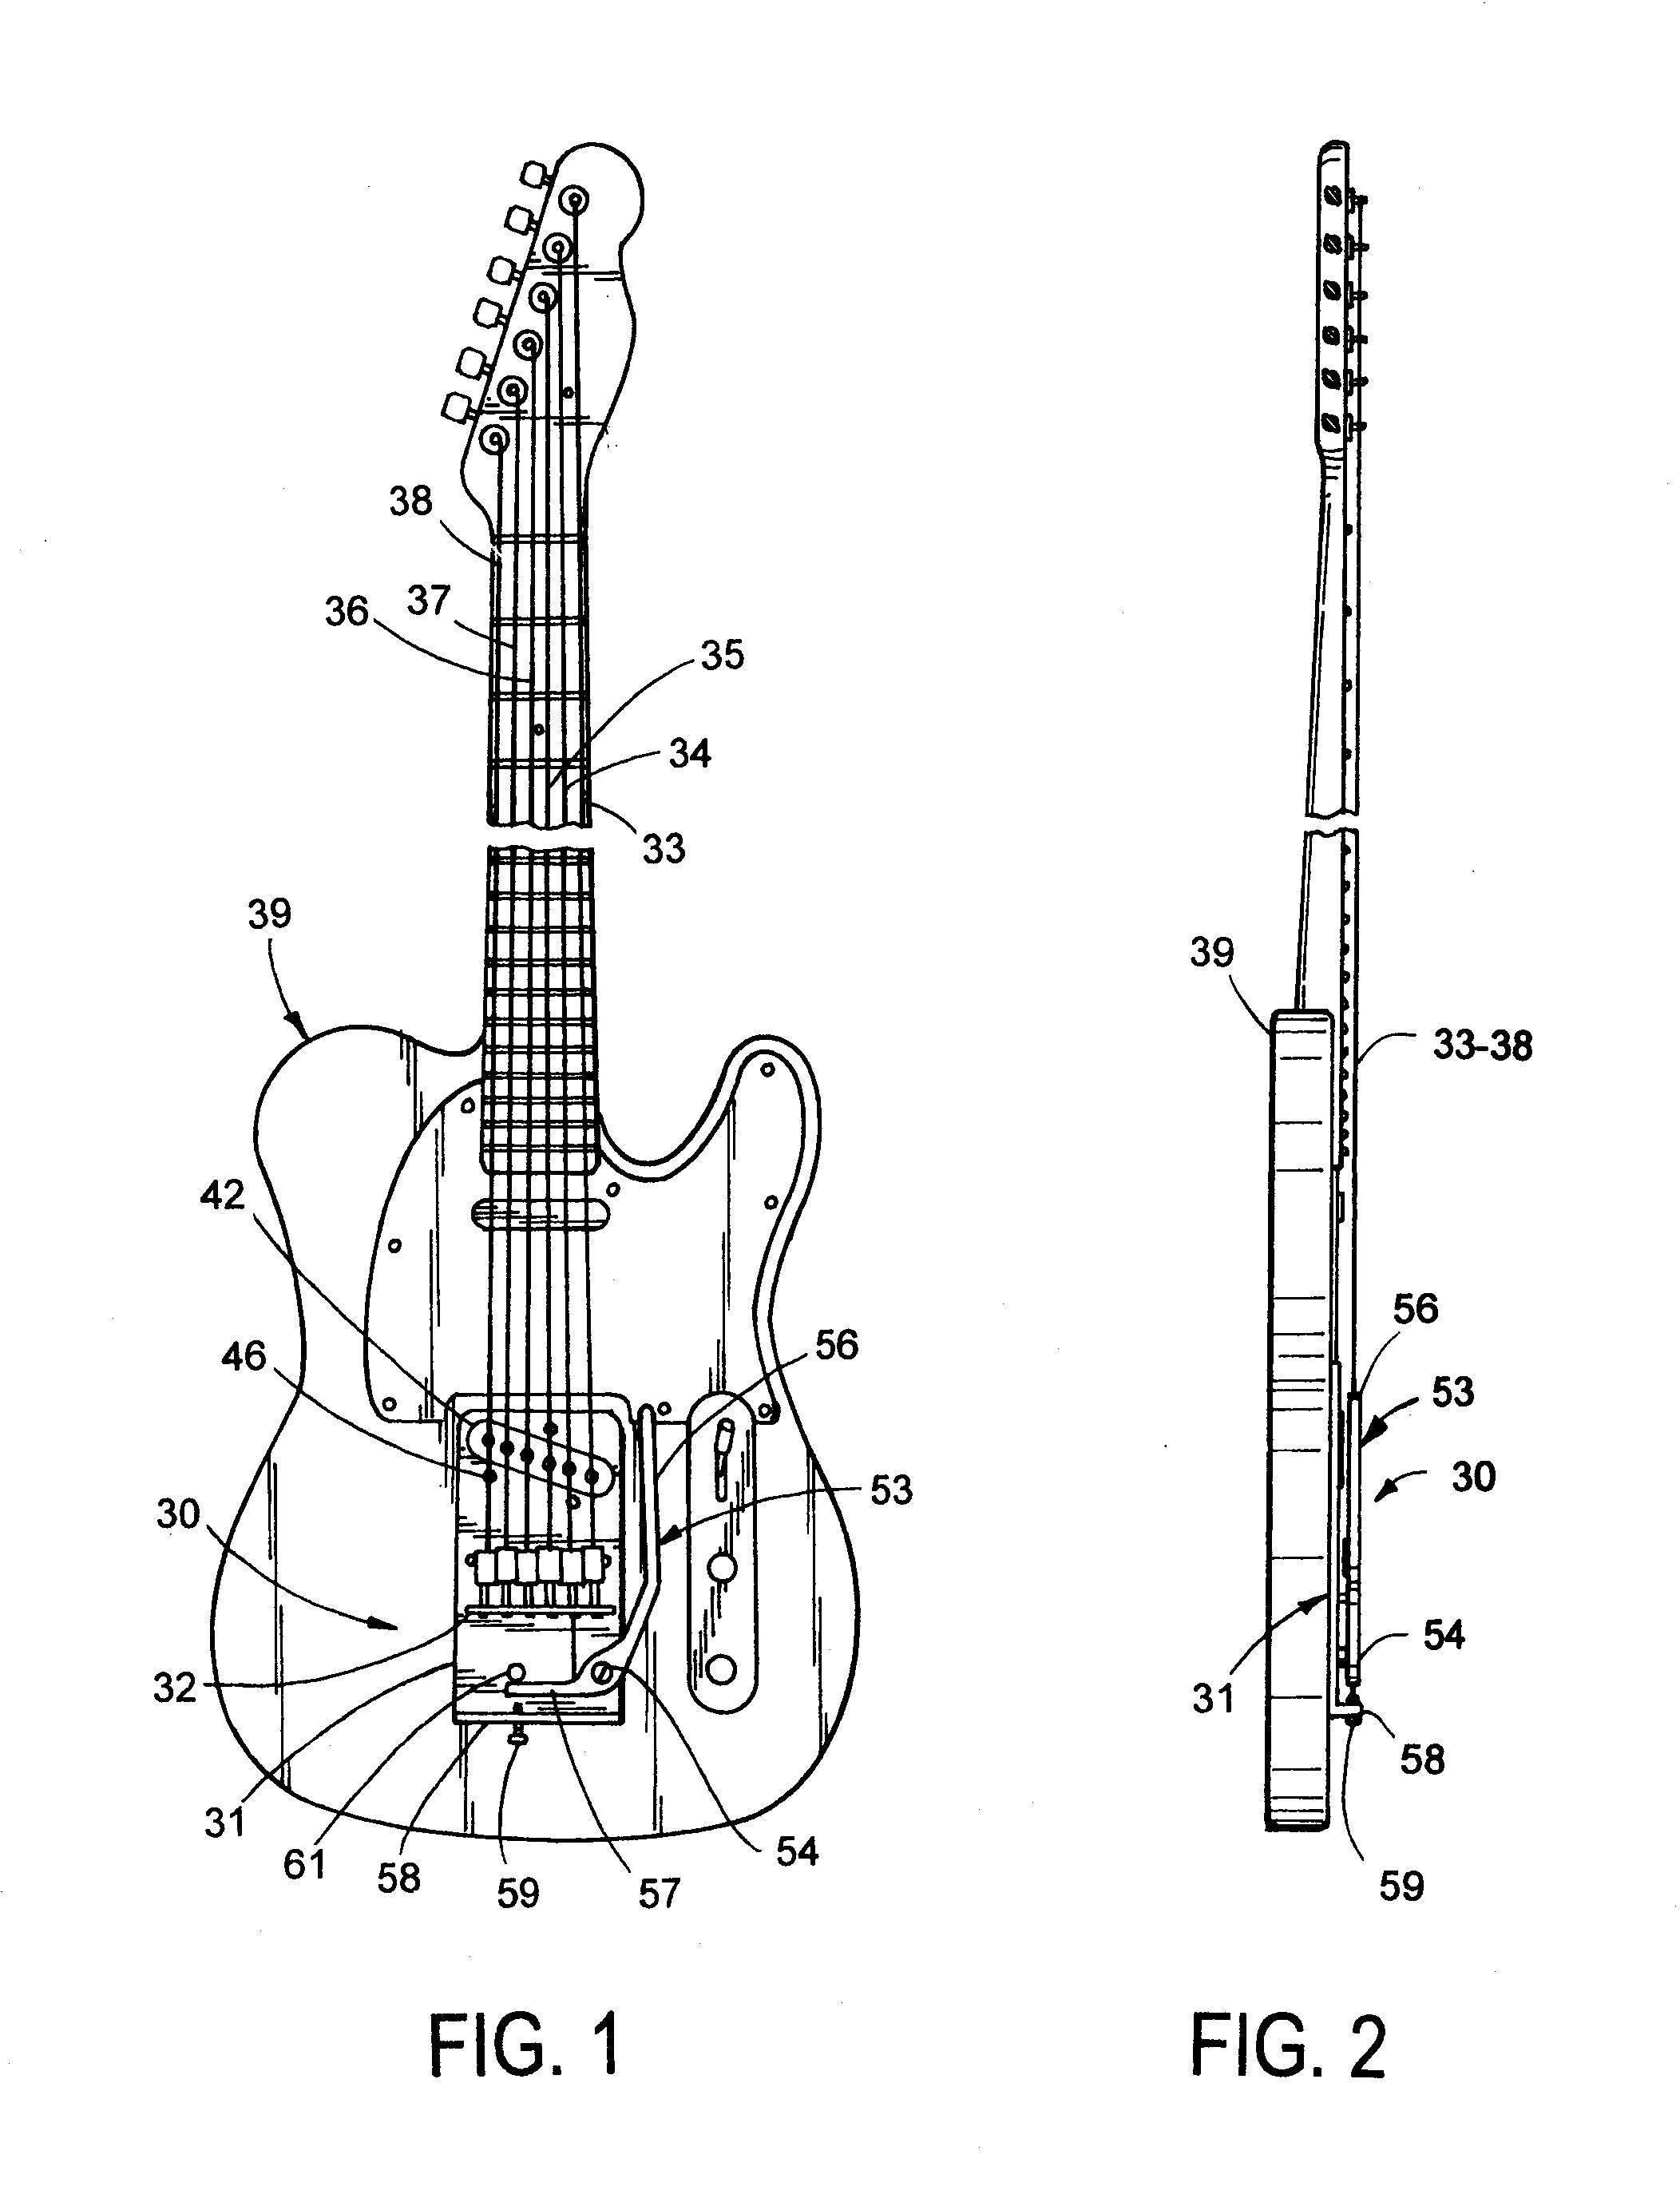 String bender for electric guitar